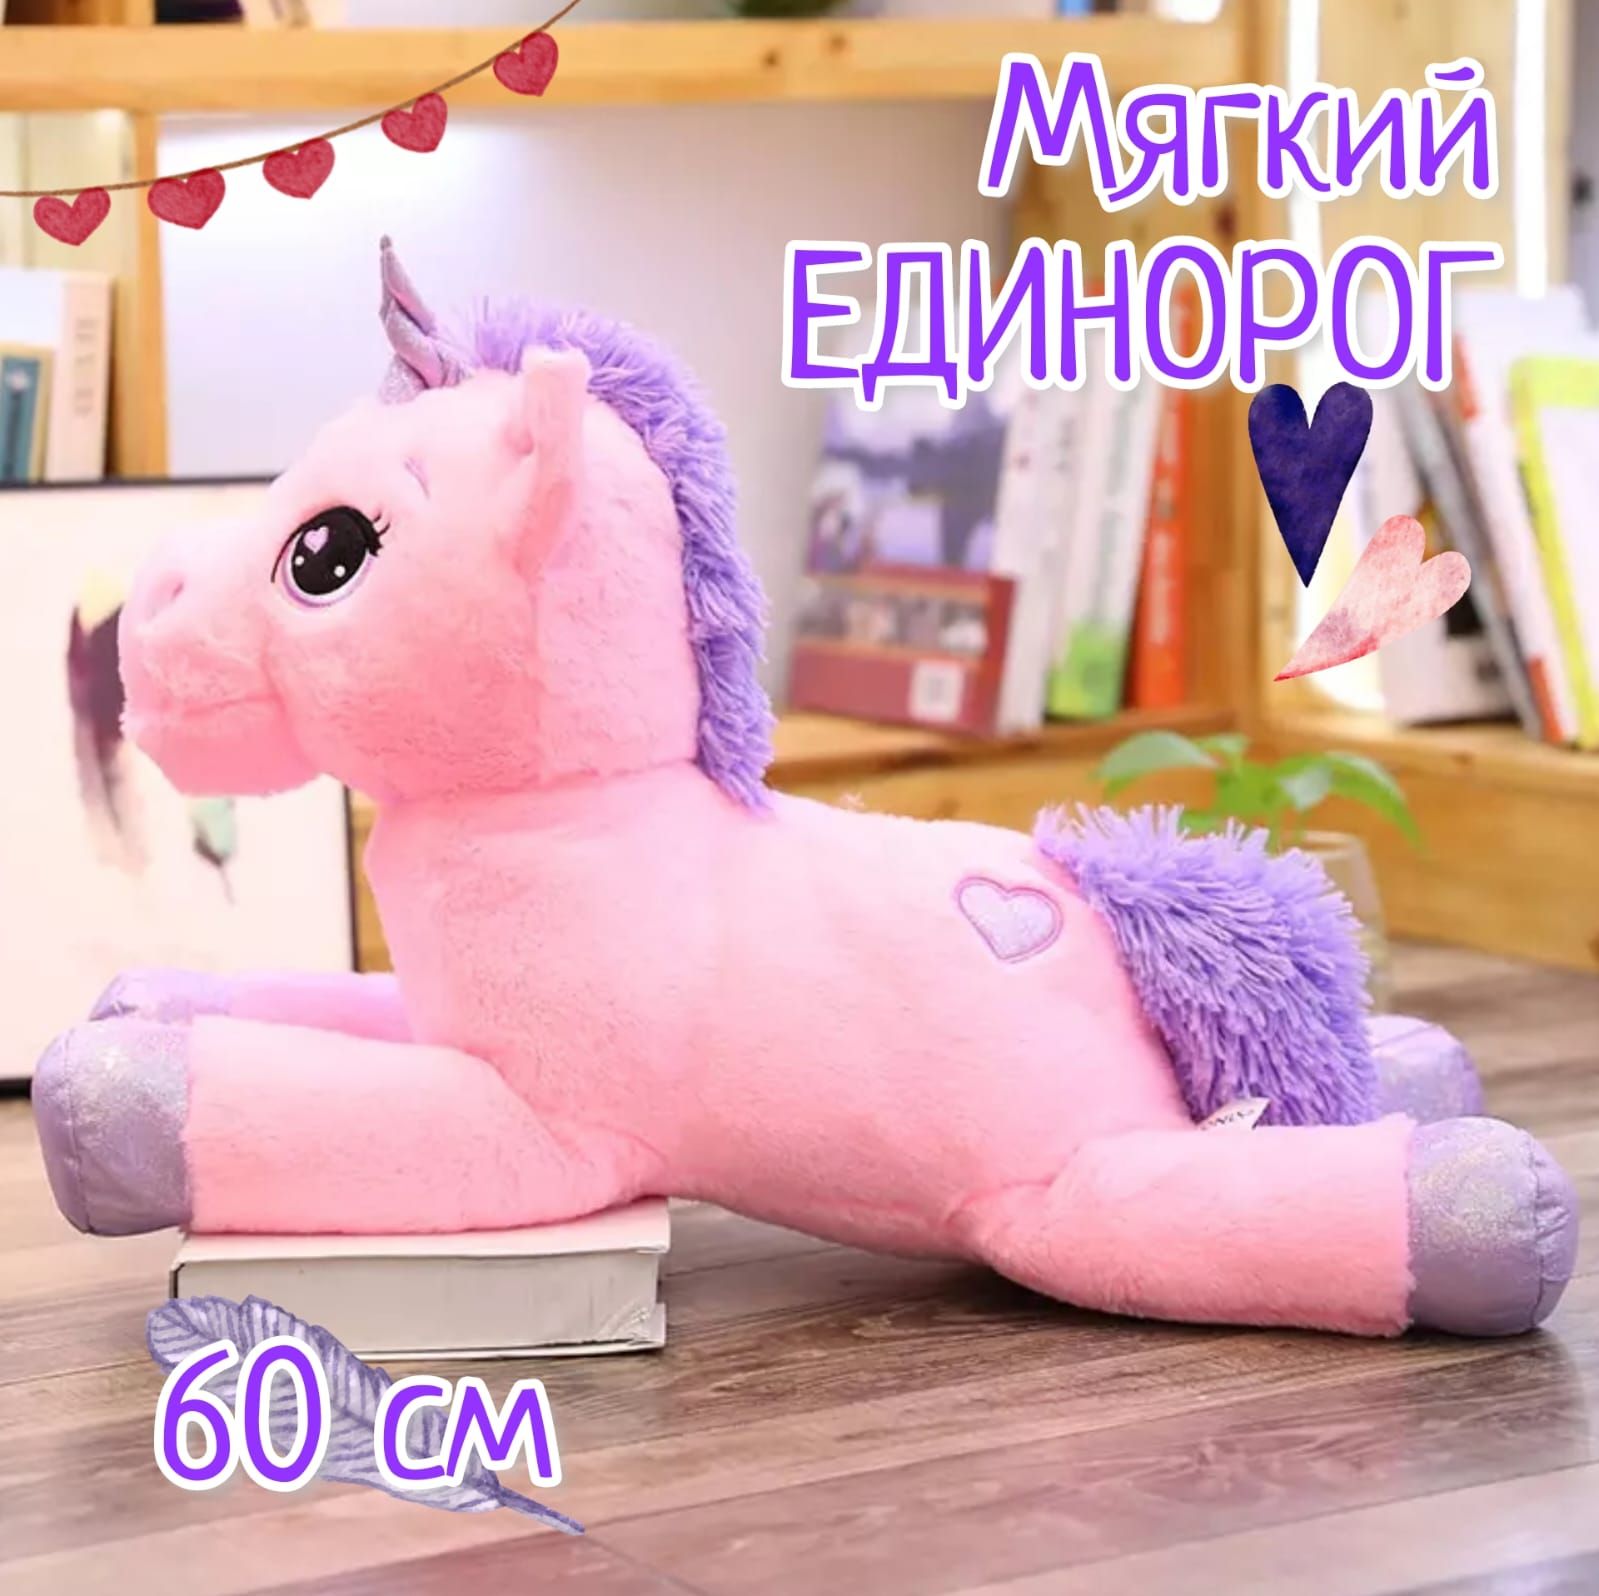 Большие мягкие единороги. Plush Toys игрушки Единорог. Игрушка Единорог розовый 80 см. Гигантский 110 см плюшевая игрушка Единорог. Единорог 80 см.